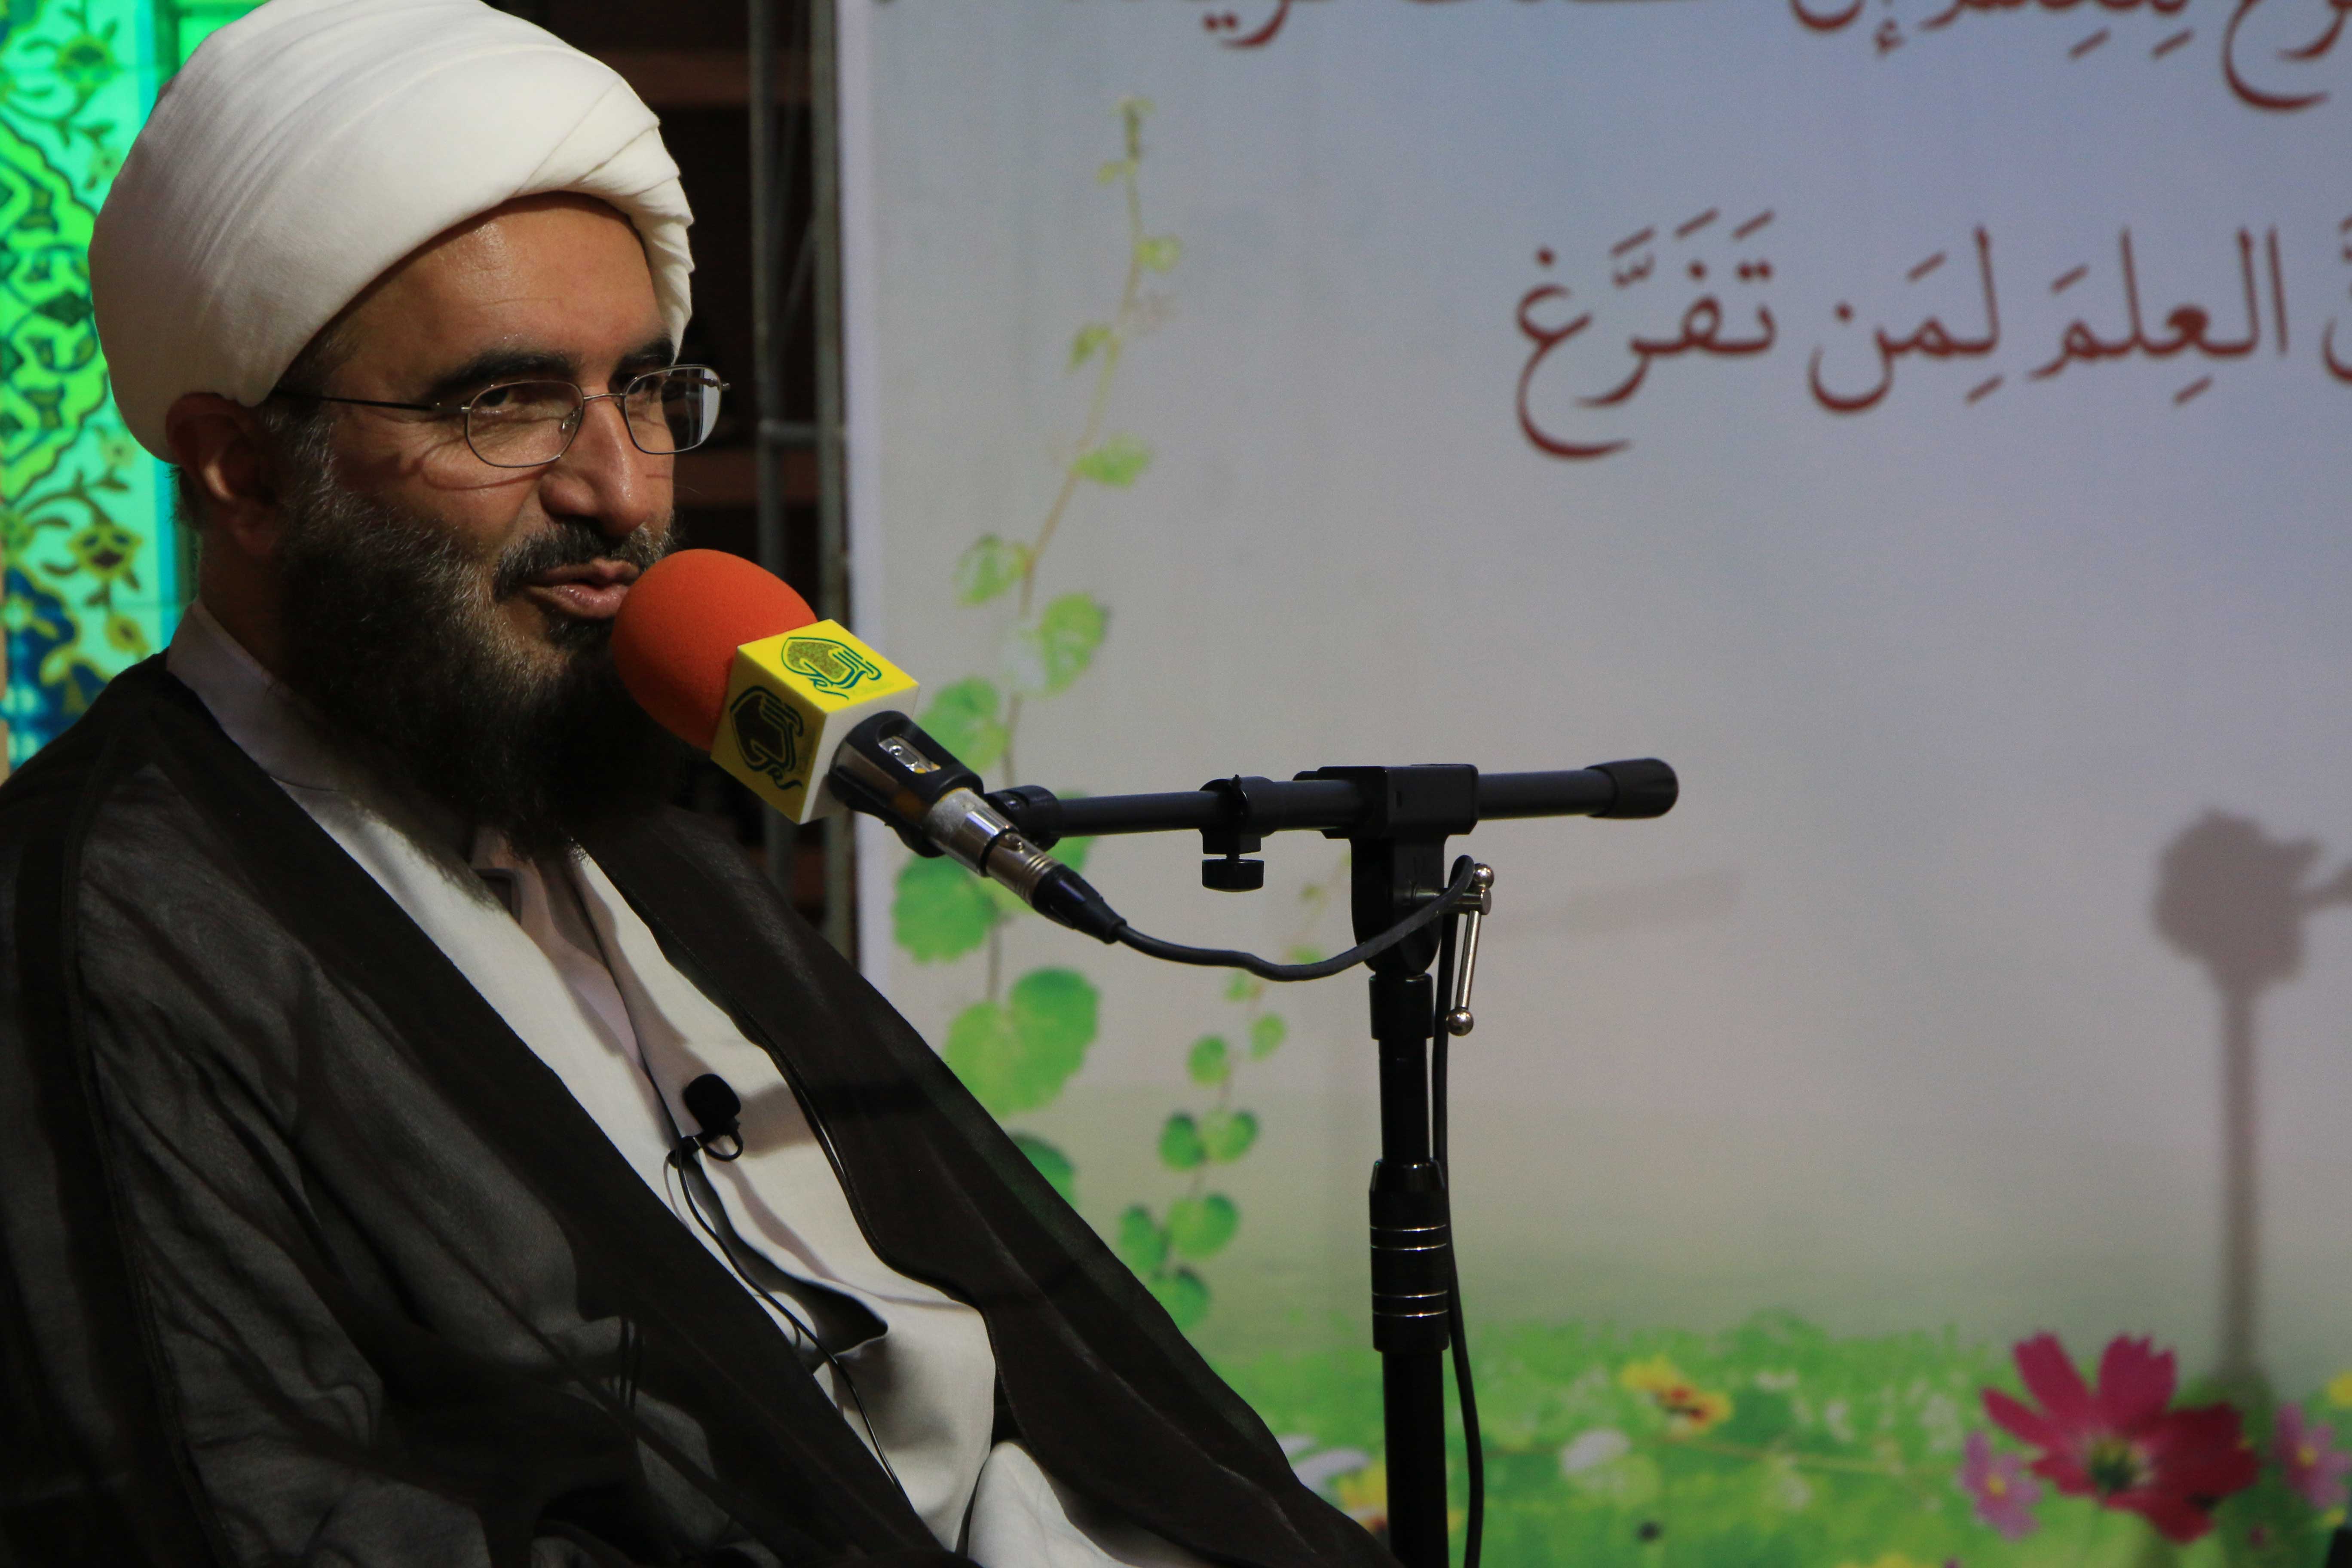 بازدید و سخنرانی حجت الاسلام والمسلمین حاج علی اکبری به مناسبت افتتاحیه سال تحصیلی ۹۹-۹۸